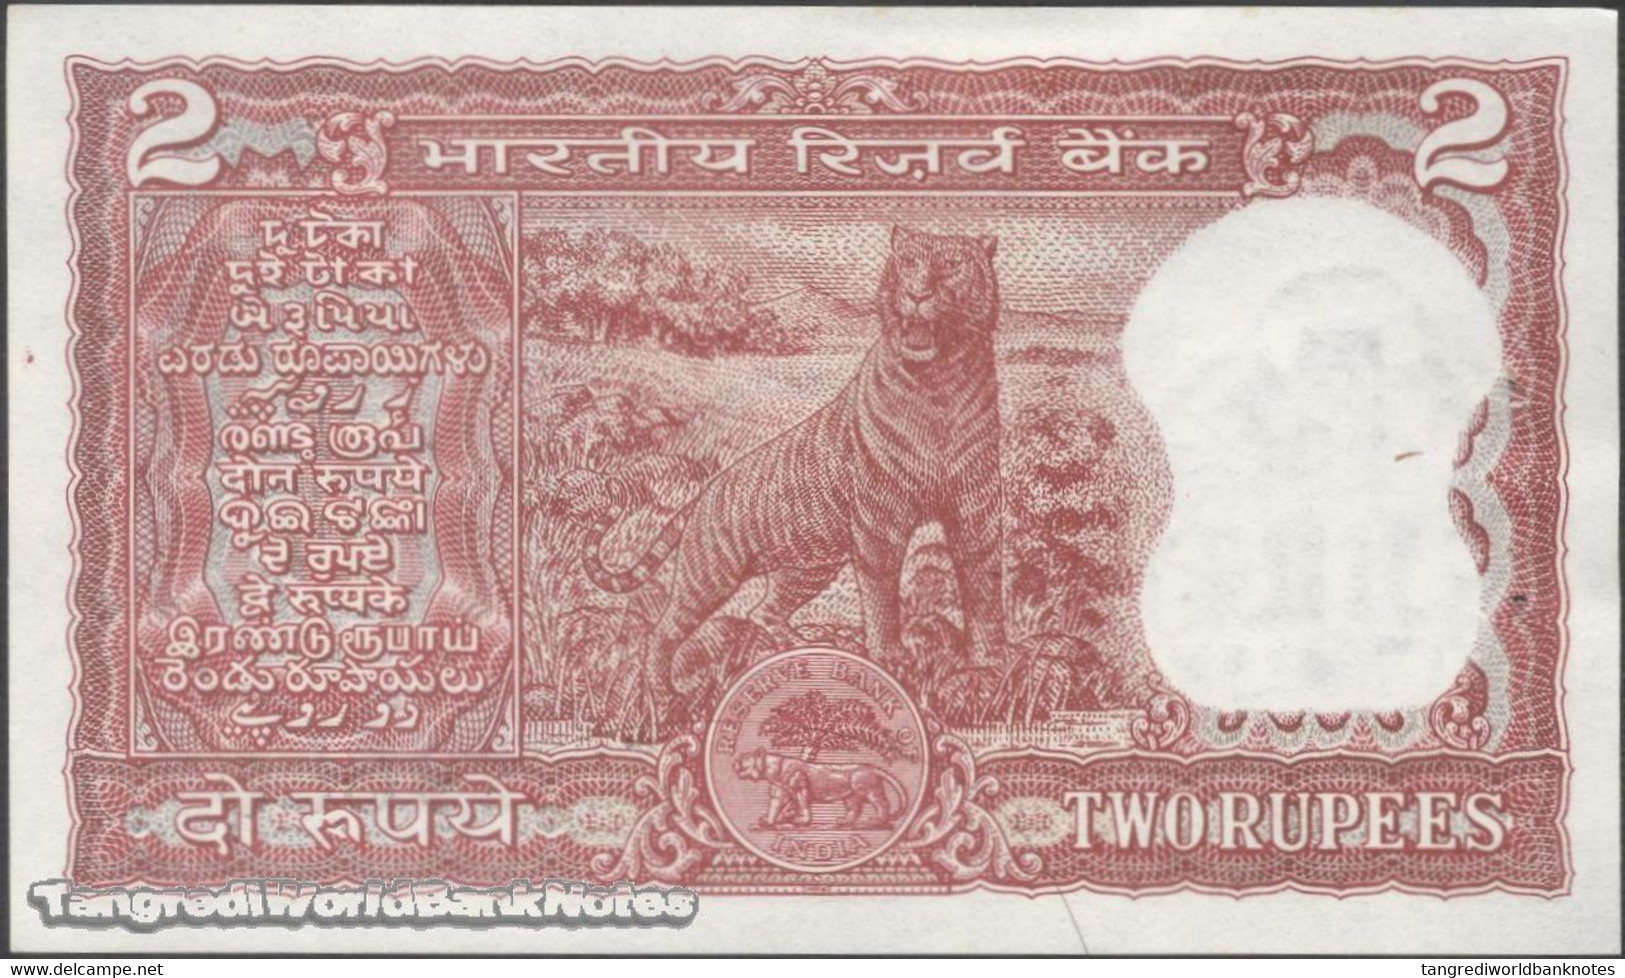 TWN - INDIA 53e - 2 Rupees 1977-1982﻿ Inset Letter B - Series F/63 Pinholes - Signature: Patel﻿ AU/UNC - India